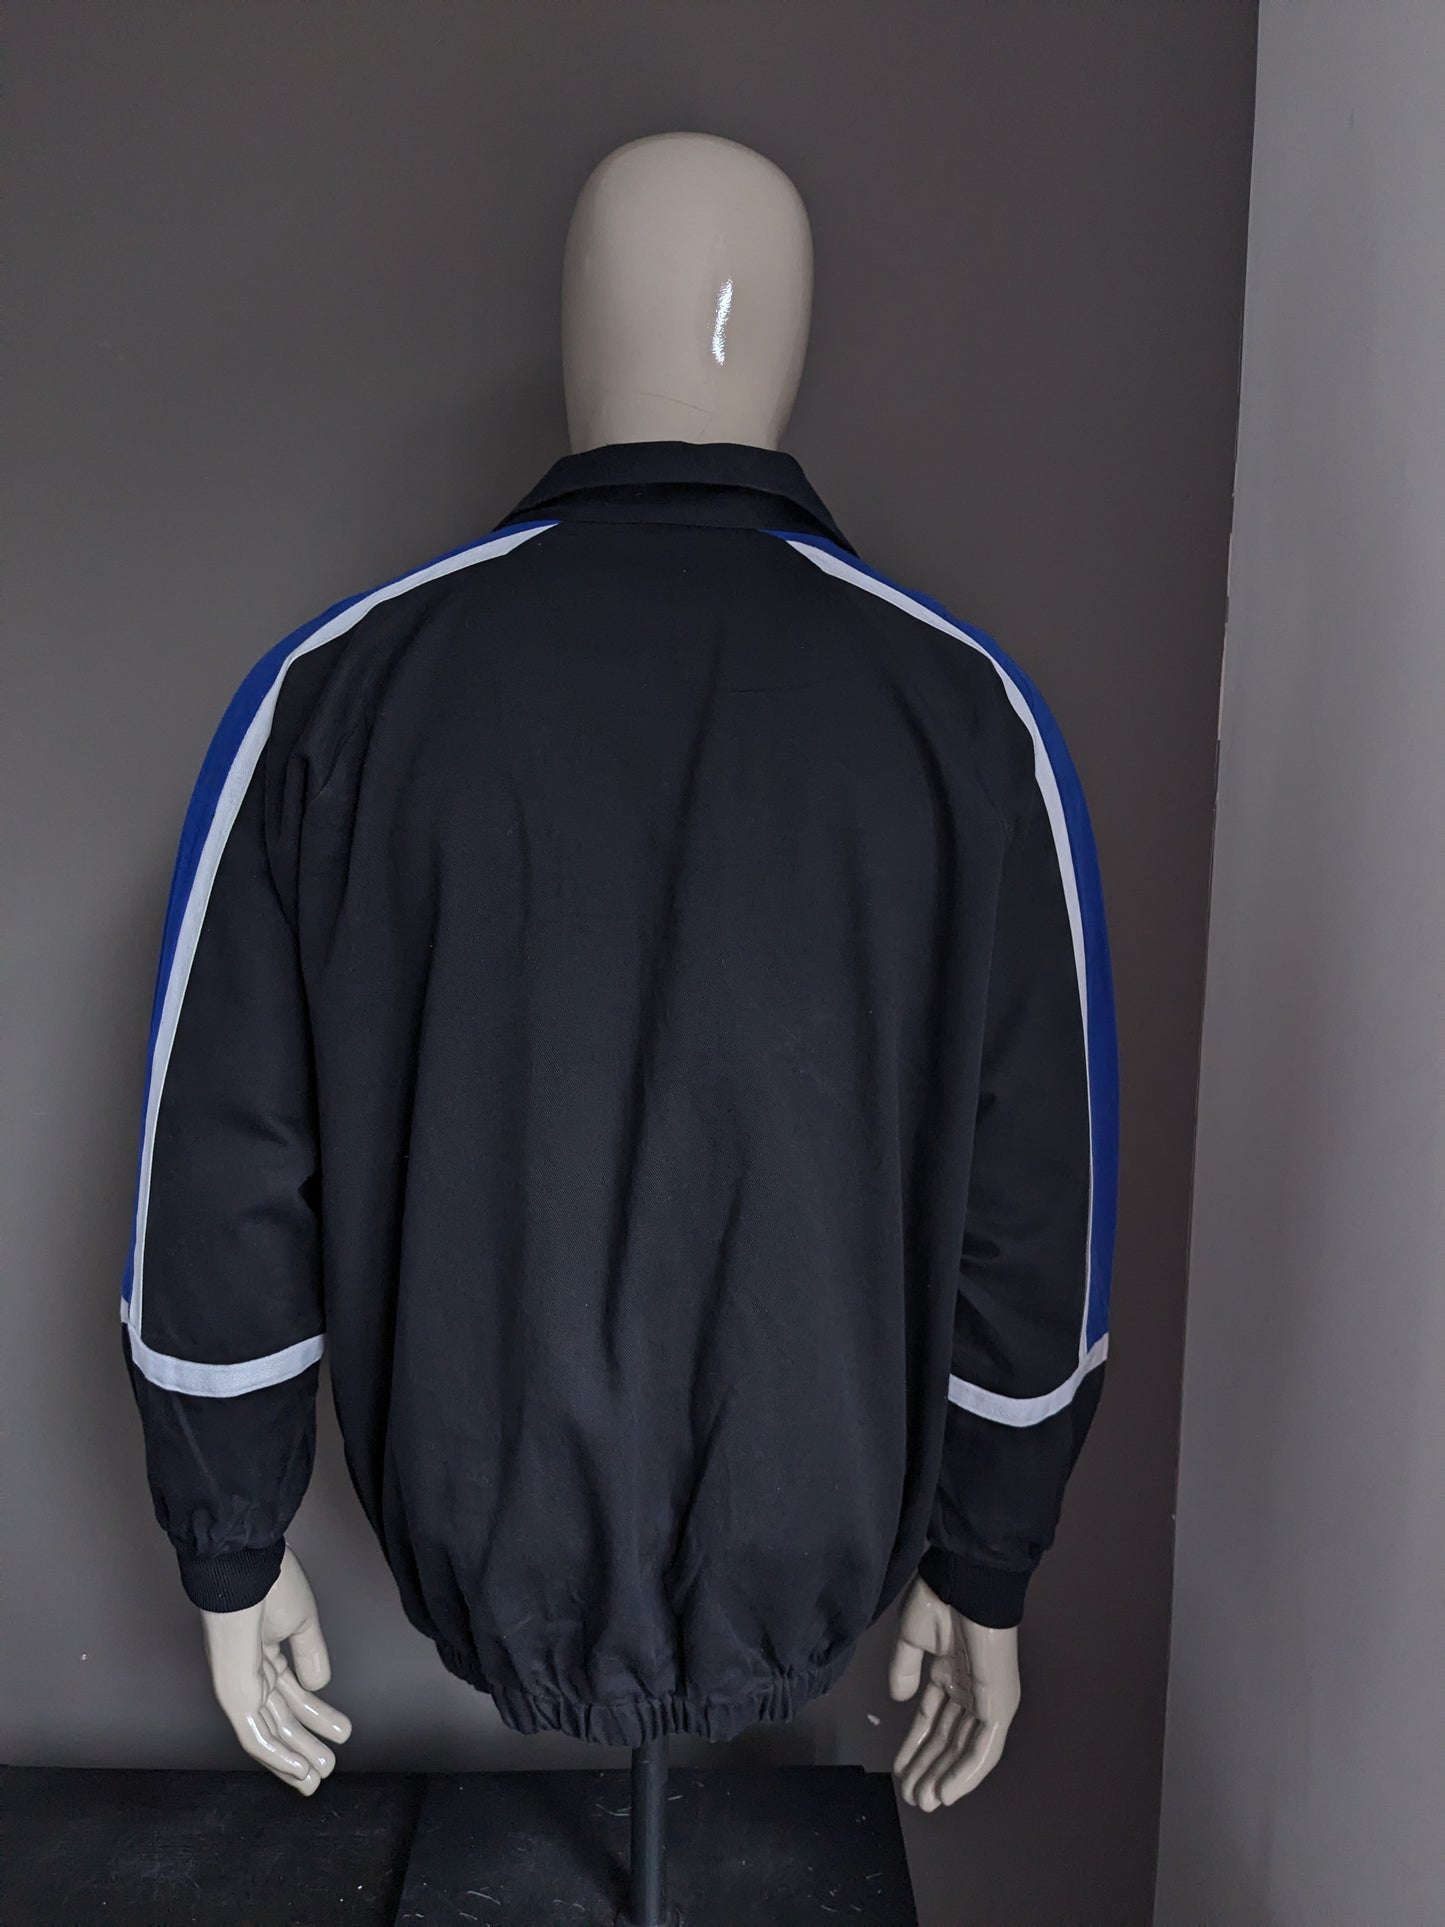 Séter de polo original de Mizuno "Reading Football Club". Black White Blue de color. Tamaño XL